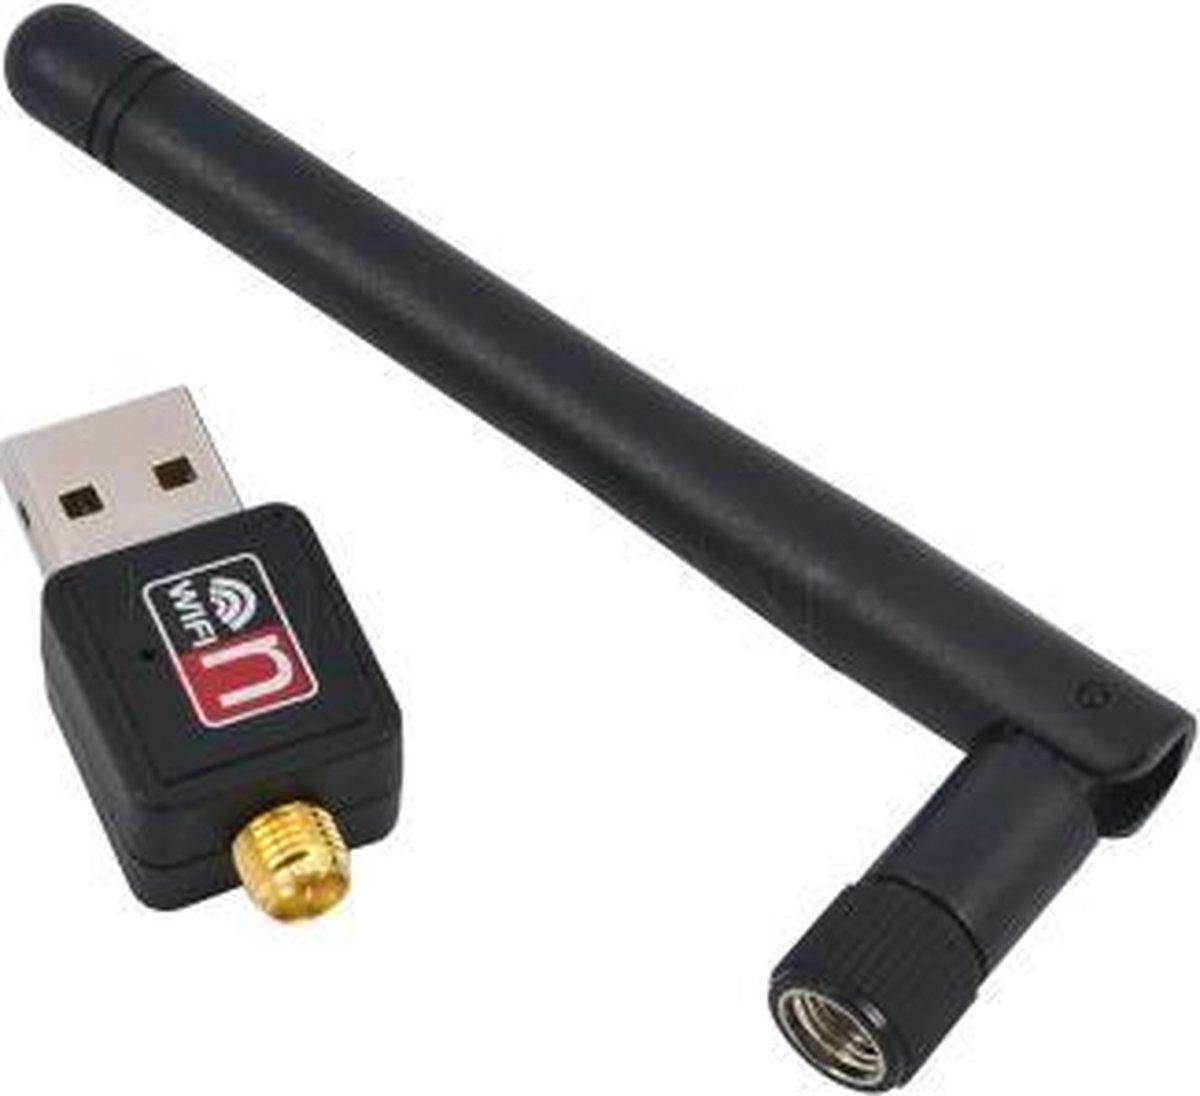 Adaptateur Hozard®, clé USB sans fil WLAN 1200 Mbps double bande 2.4G/5G USB  3.0 clé